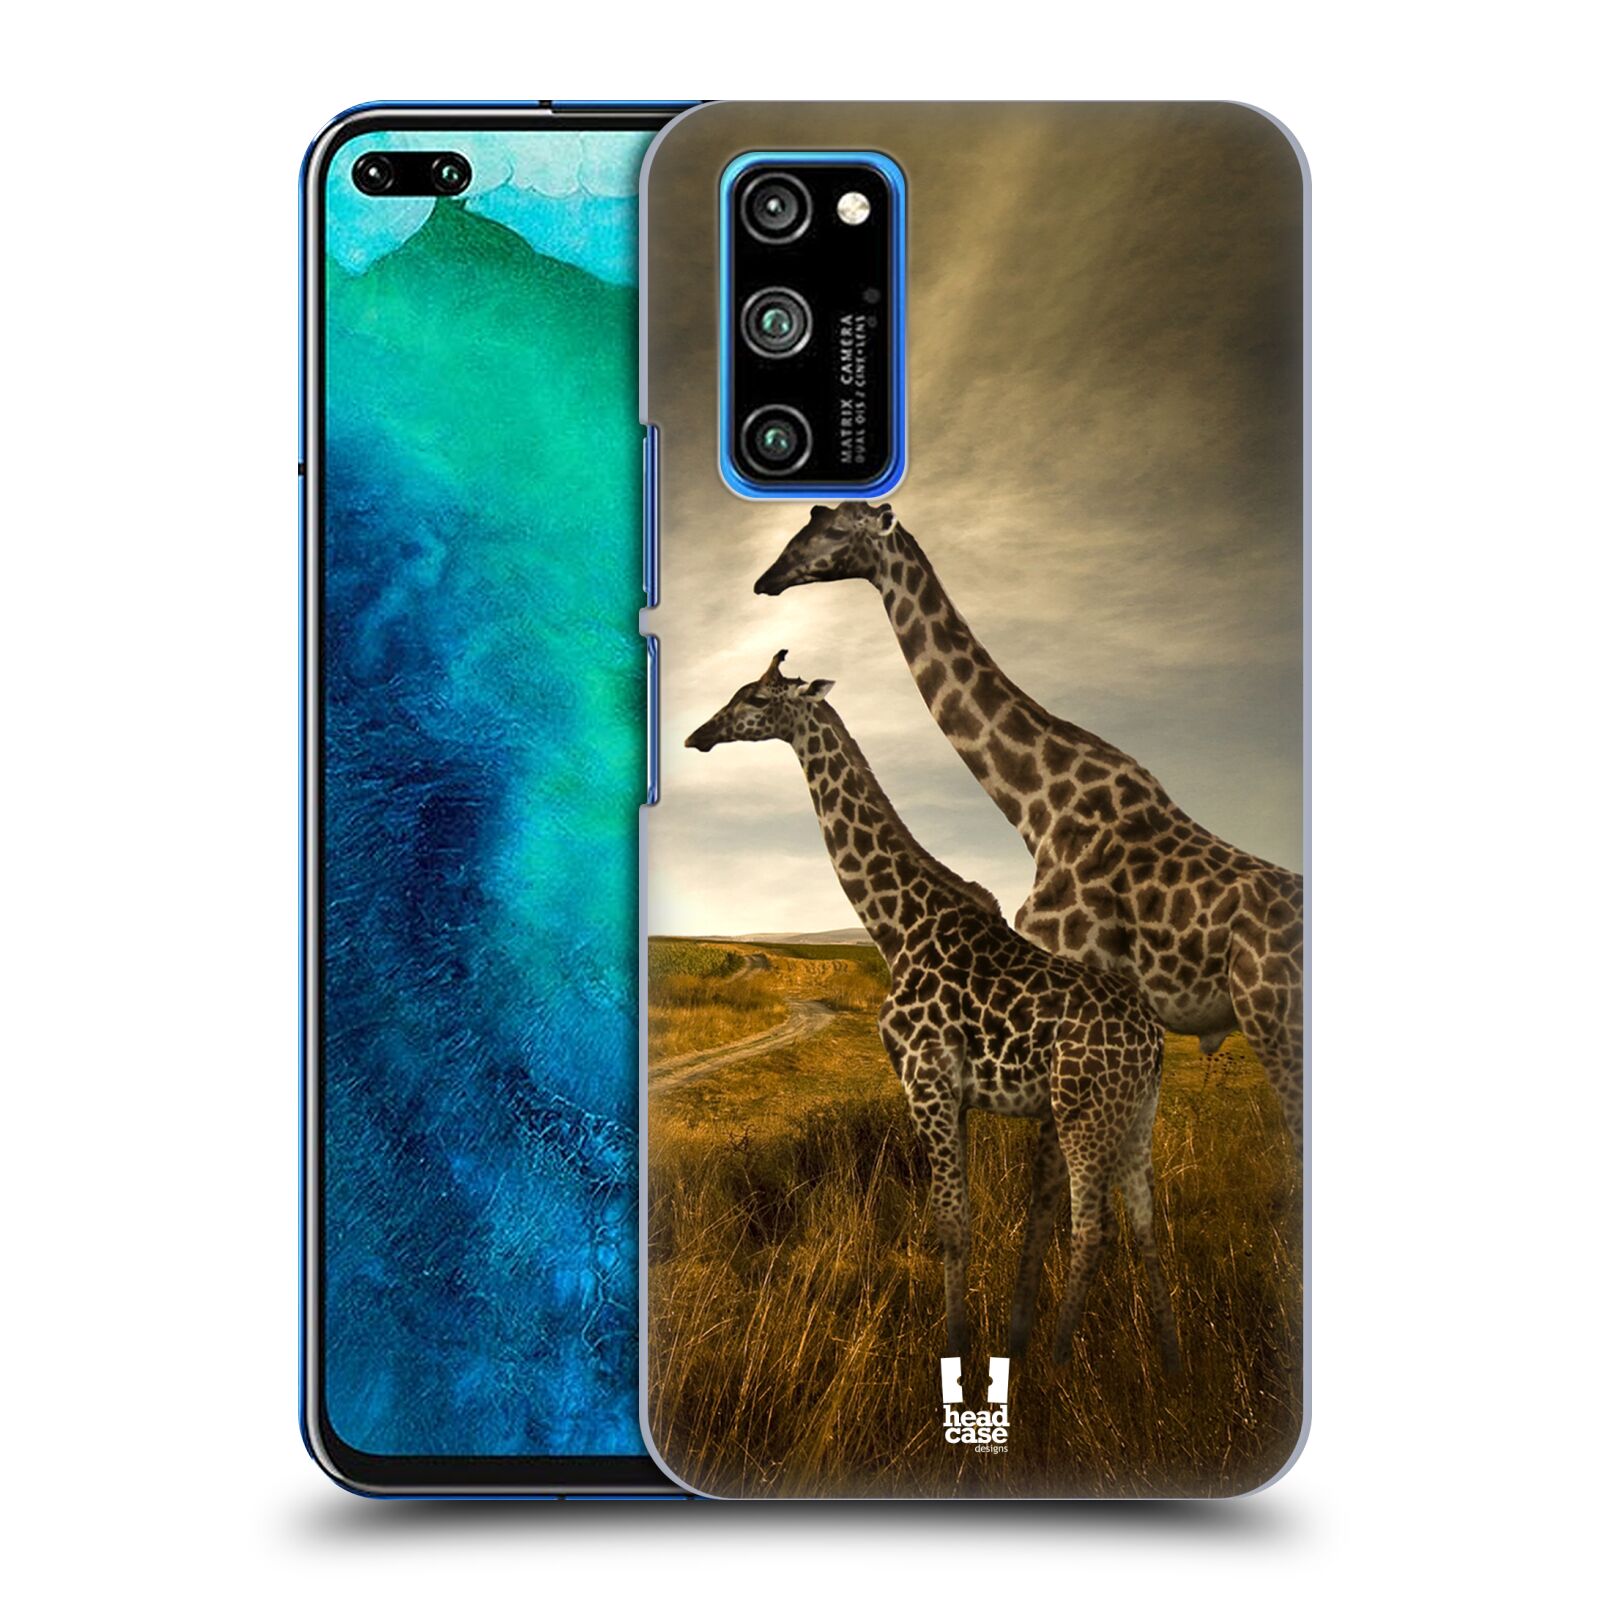 Zadní obal pro mobil Honor View 30 PRO - HEAD CASE - Svět zvířat žirafy